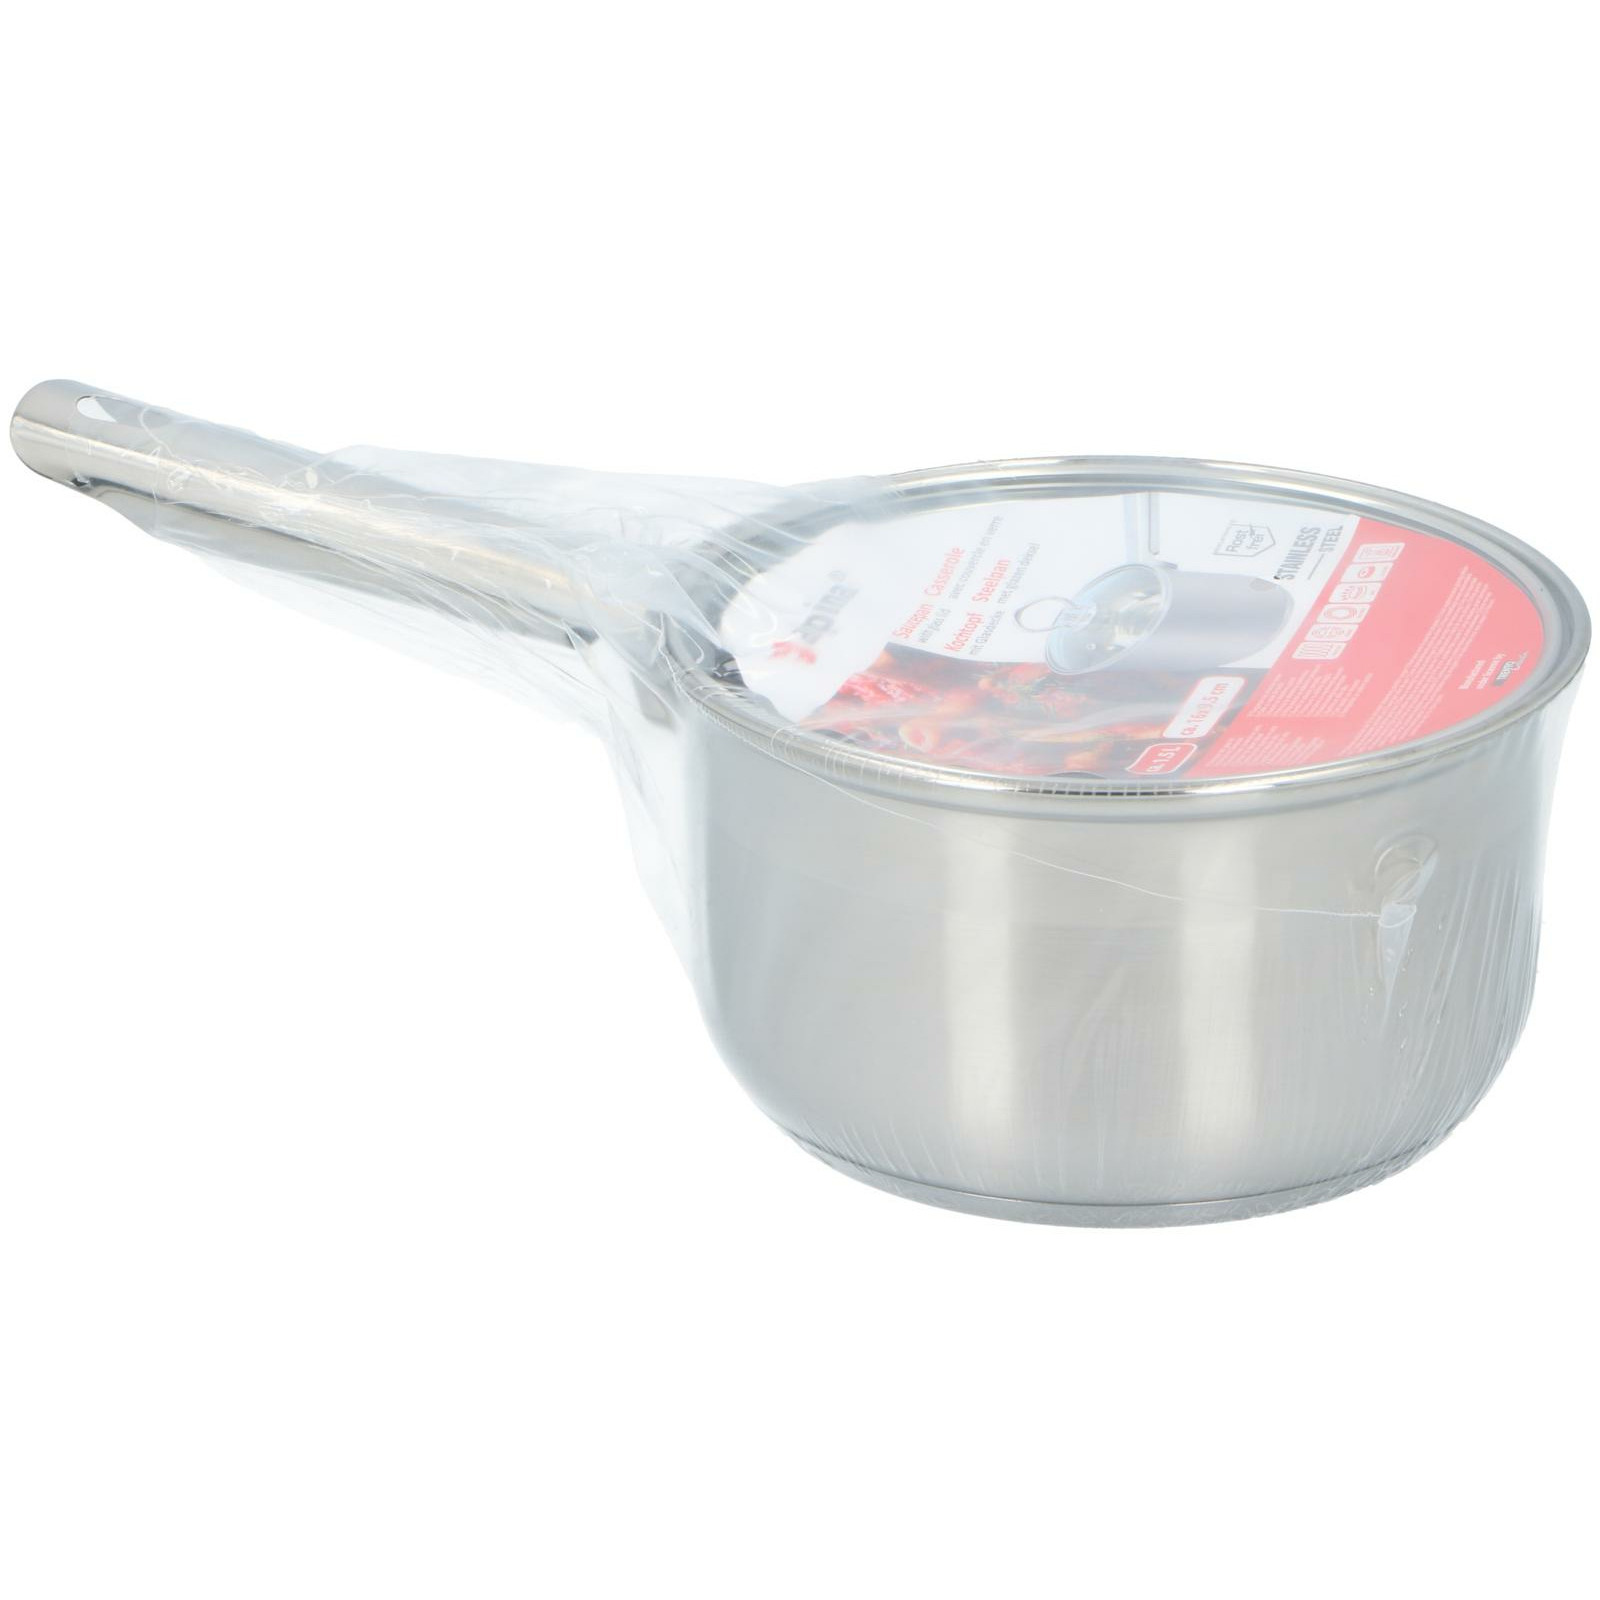 Steelpan-sauspan met deksel van glas Alle kookplaten geschikt zilver D16 x H9 cm rvs